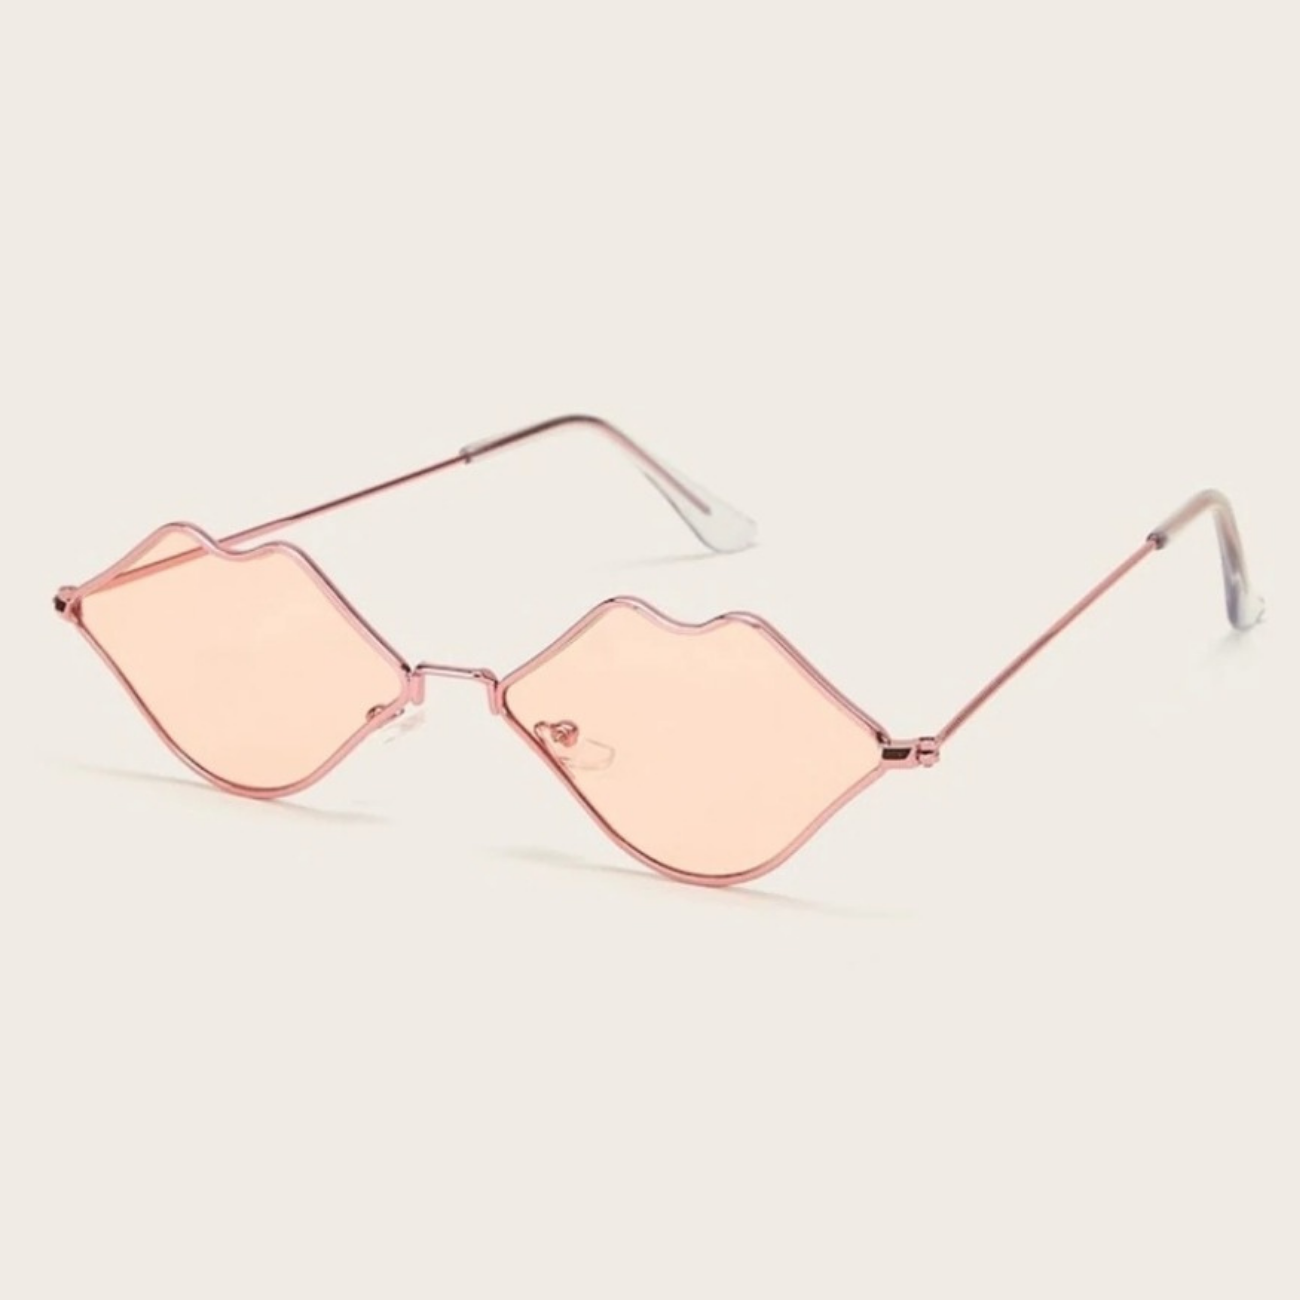 Mouth frame glasses